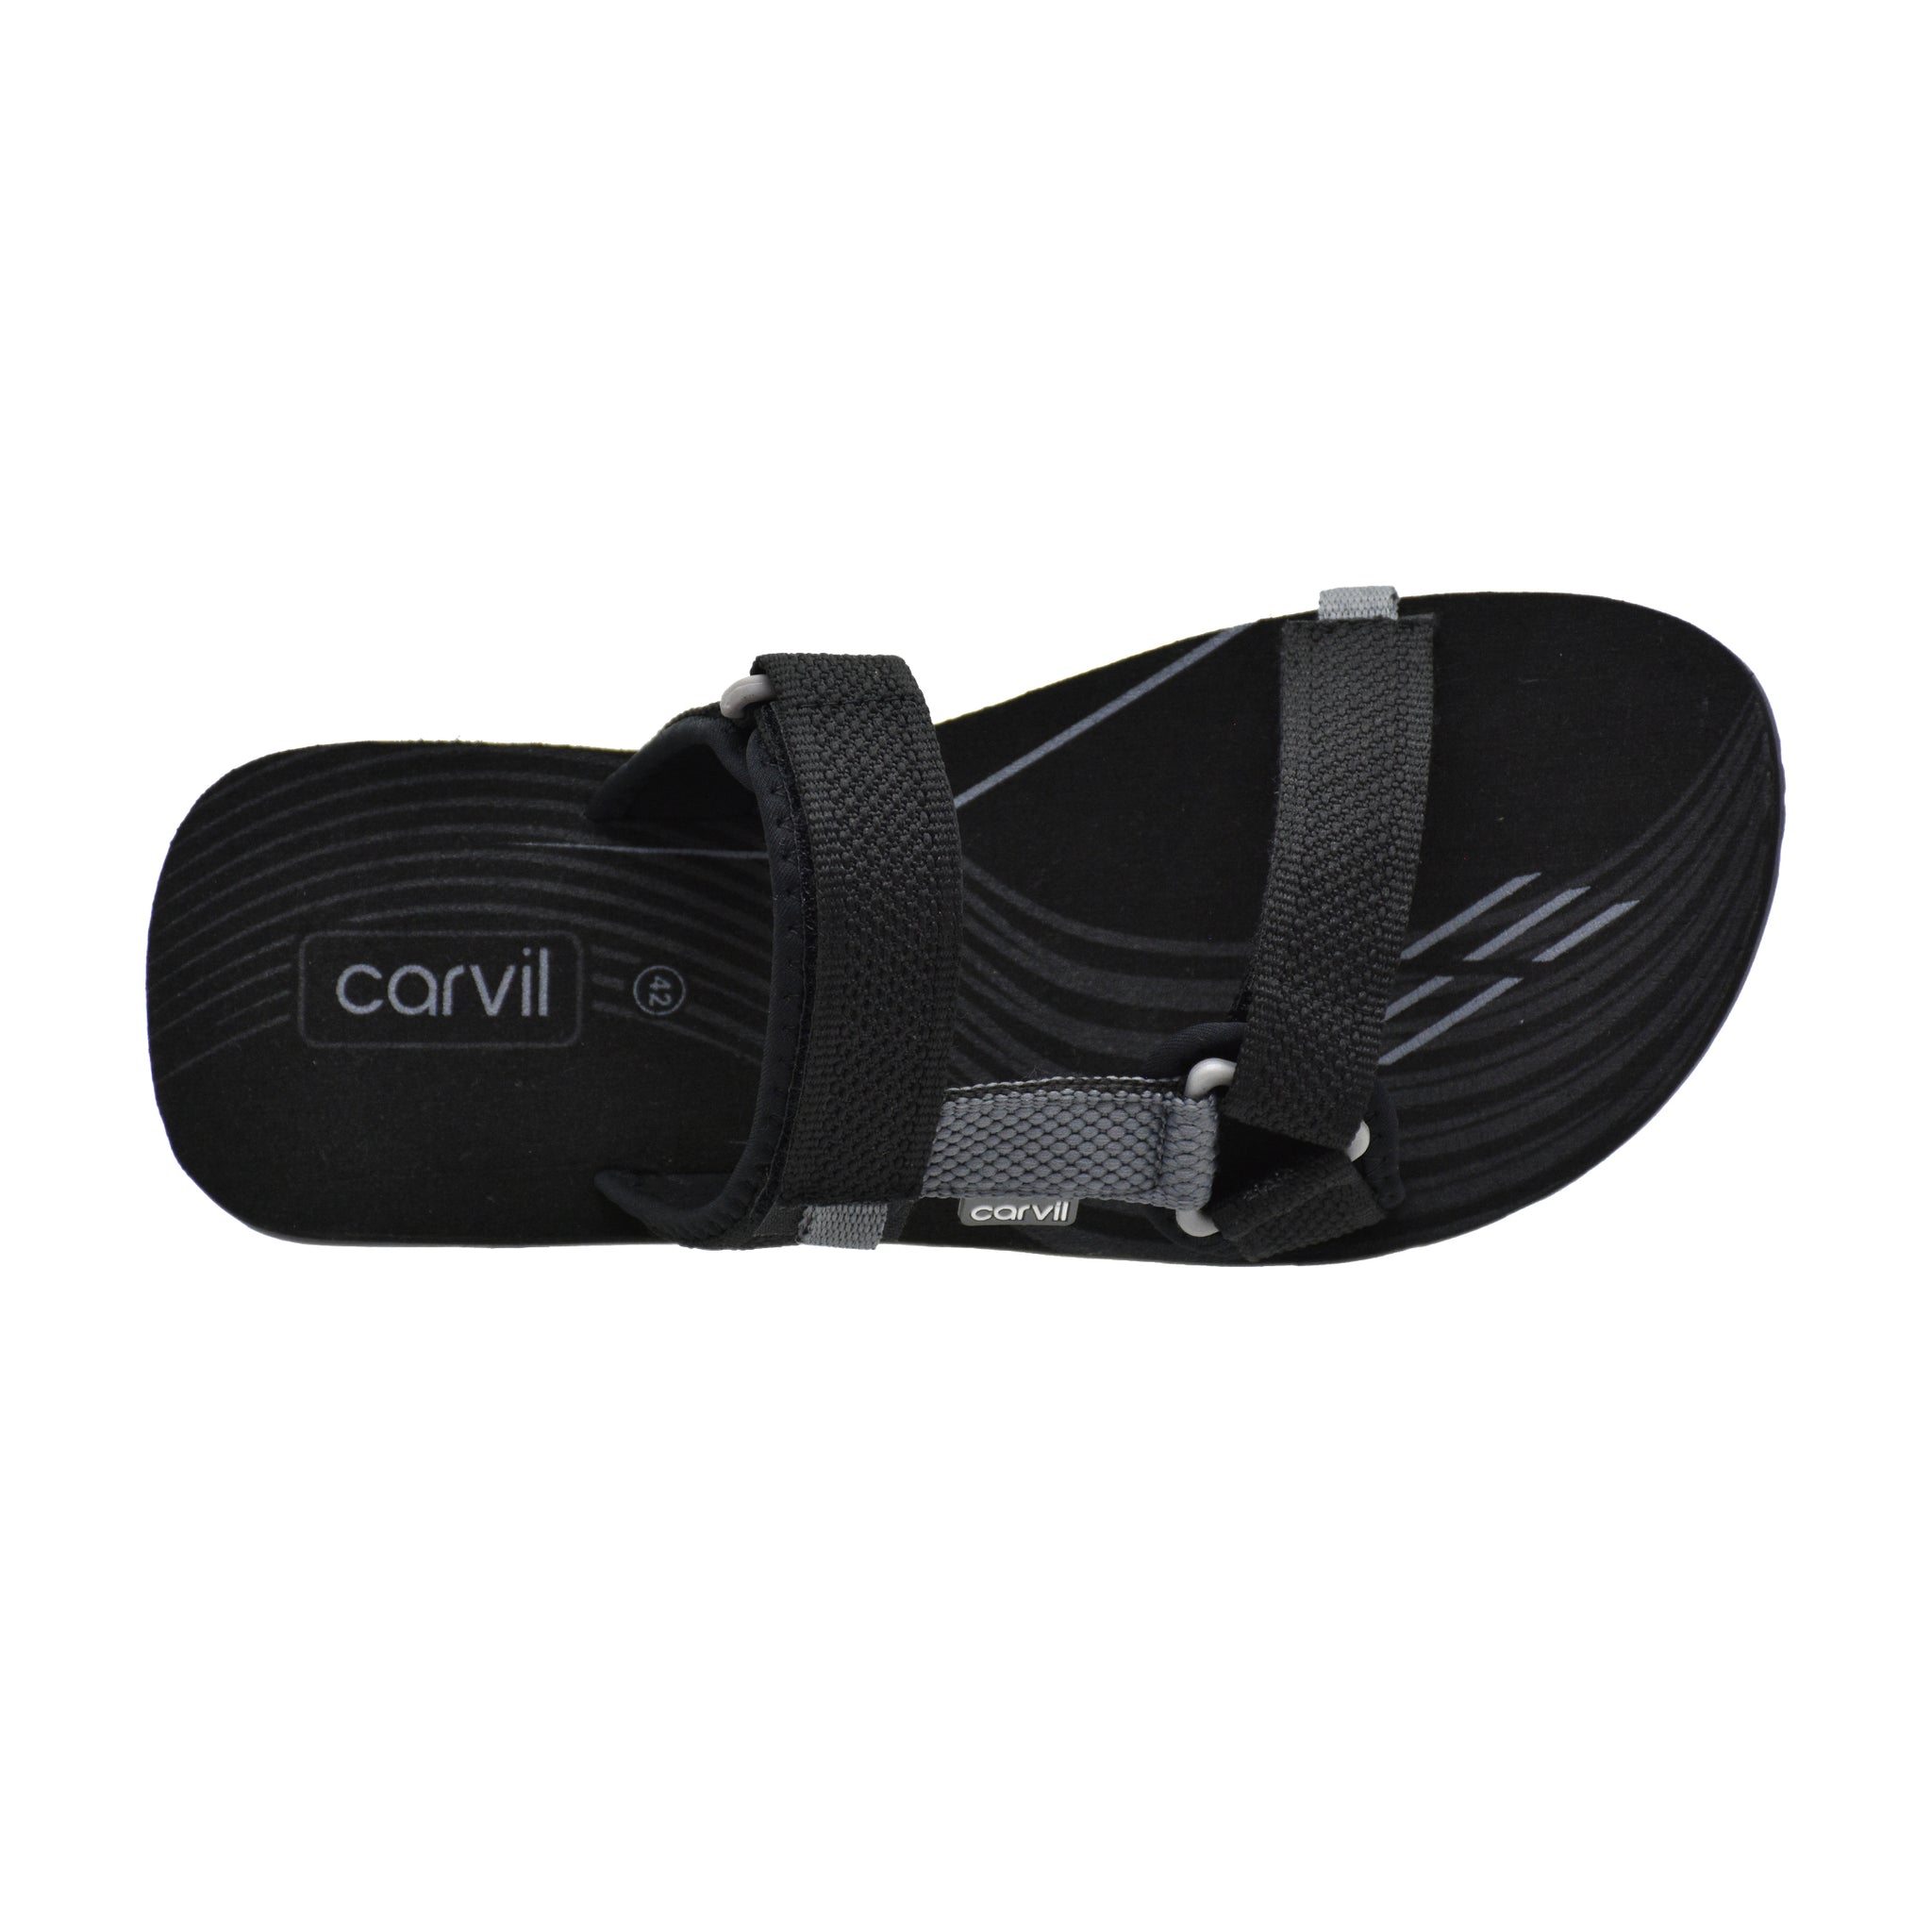 Carvil Sandal Spons Pria SPEXTRA-S14 M BLACK/GREY